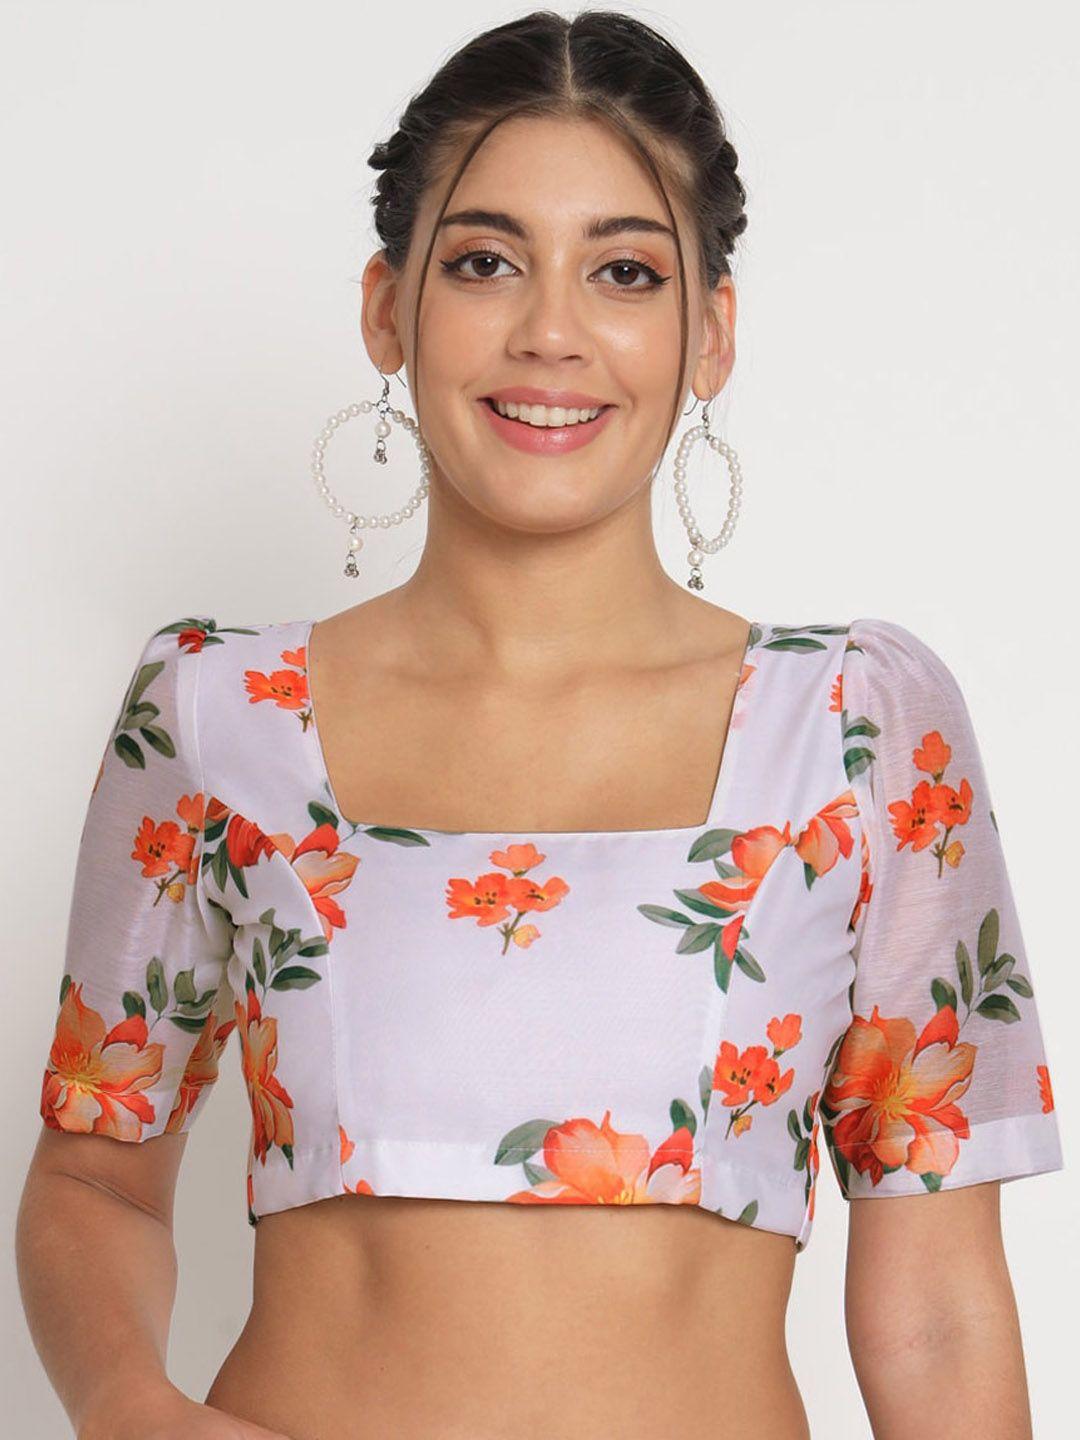 studio rasa floral printed chanderi saree blouse